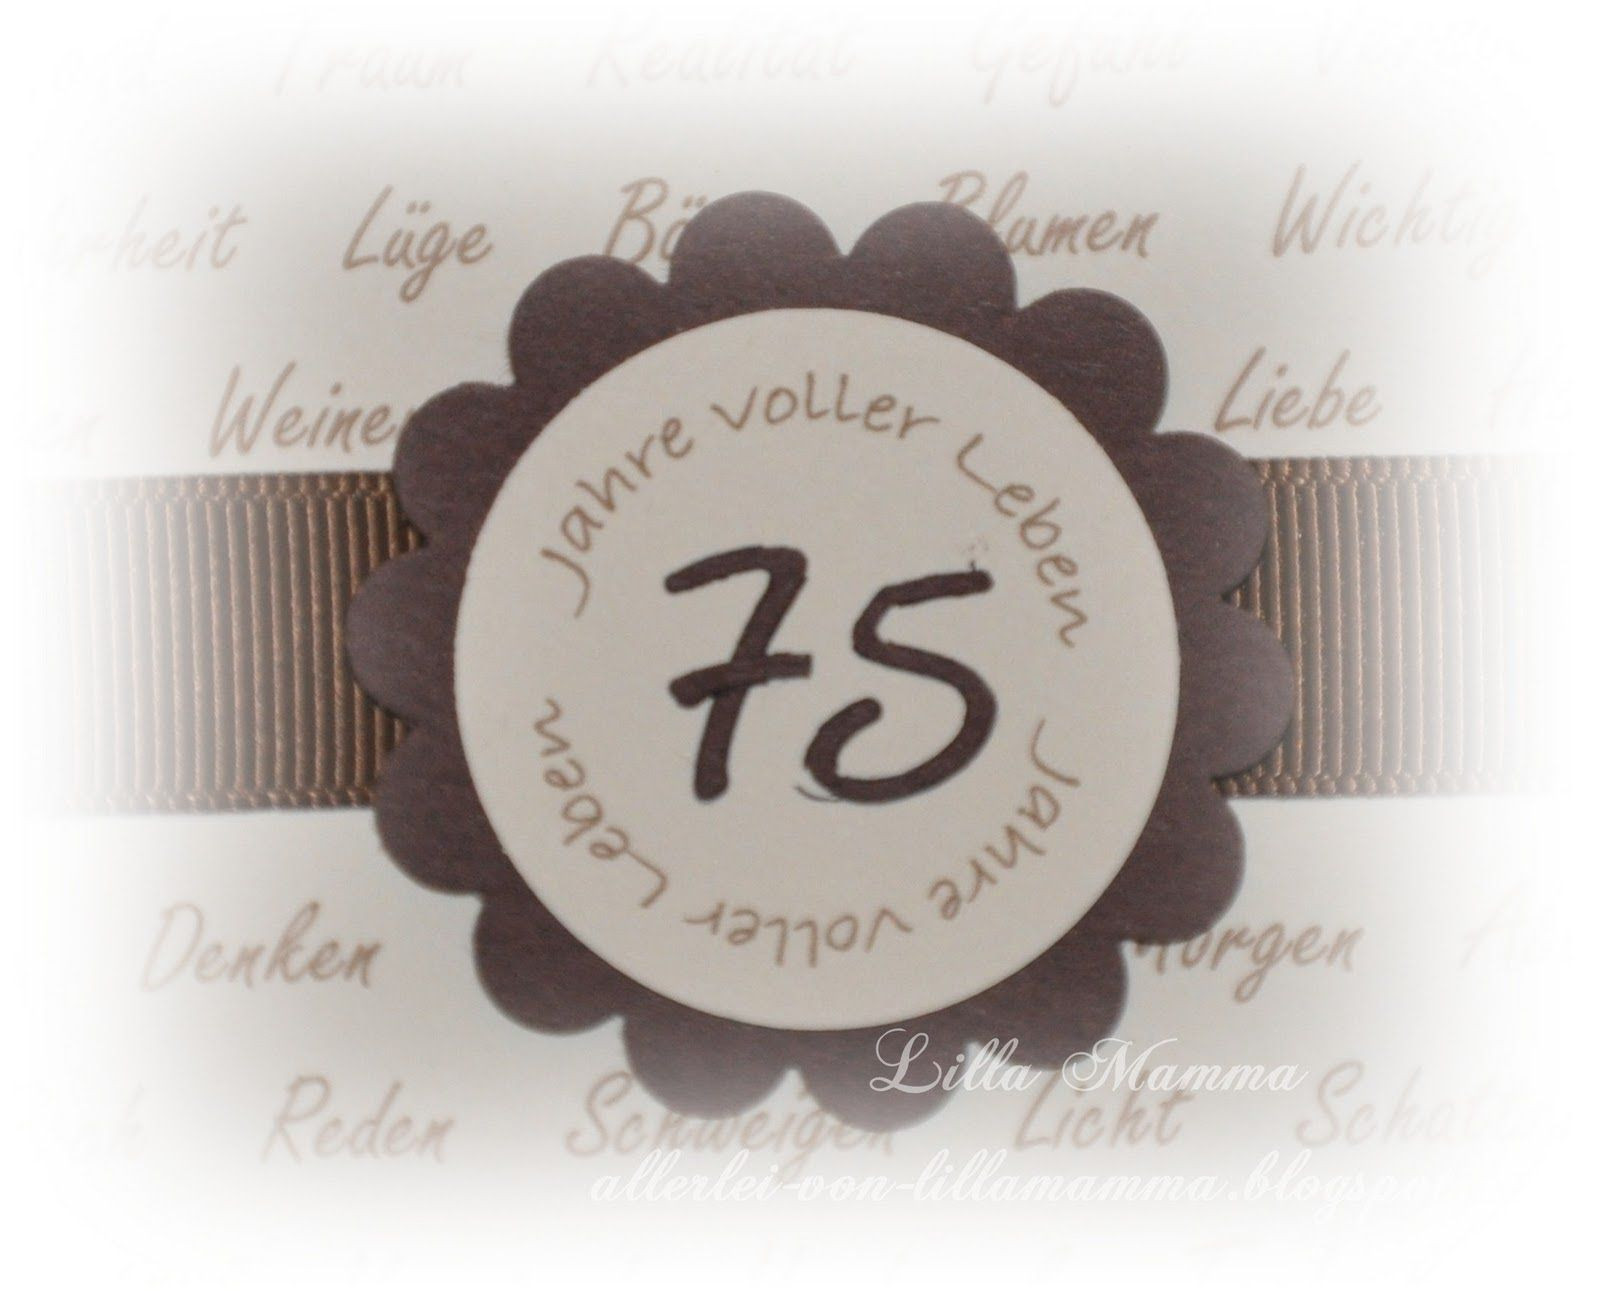 Geburtstagswünsche Zum 75 Geburtstag
 Einladungskarten Zum 75 Geburtstag